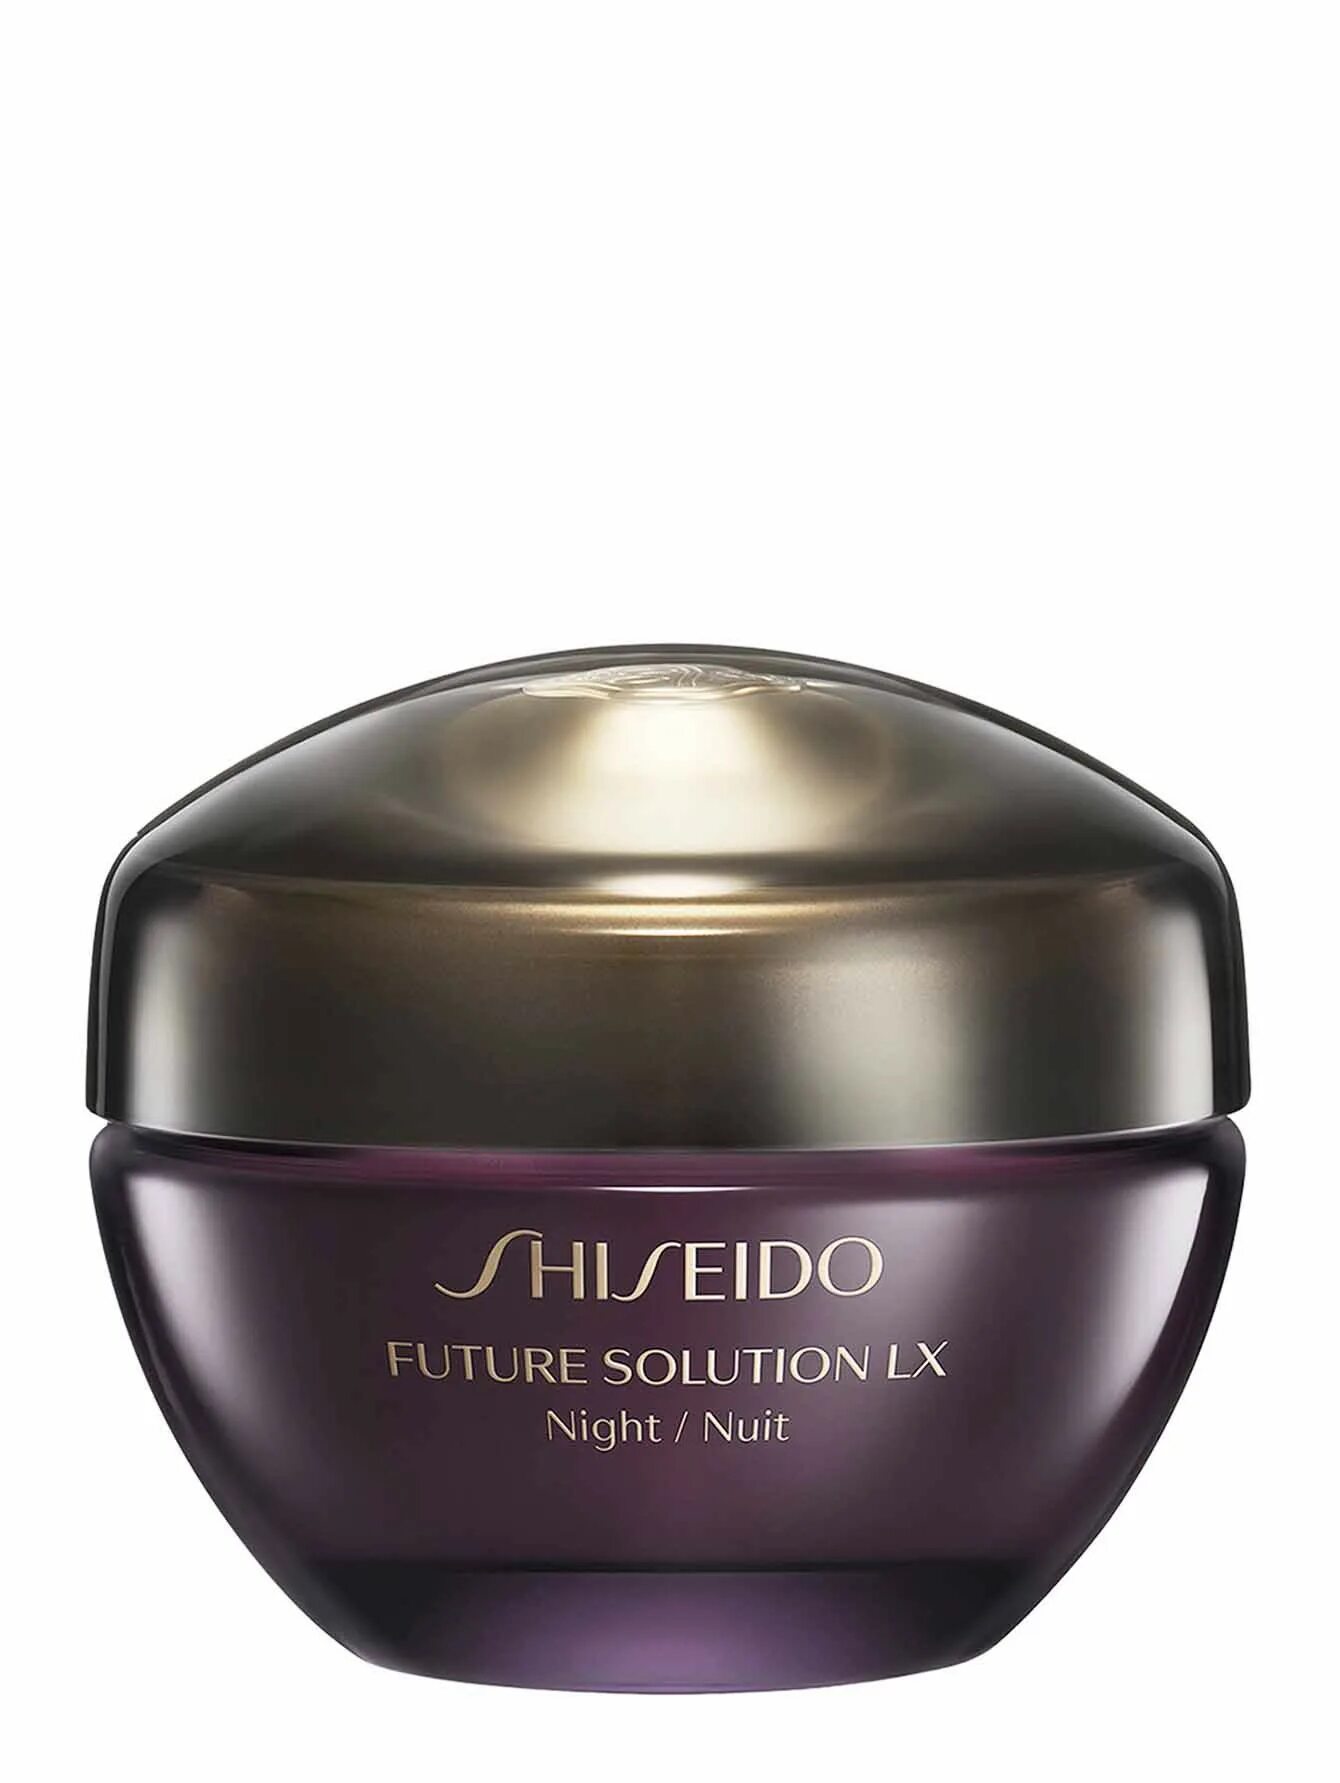 Крем Shiseido Future solution. Шисейдо крем Future solution LX. Shiseido BB. Крем для лица шисейдо антивозрастной.